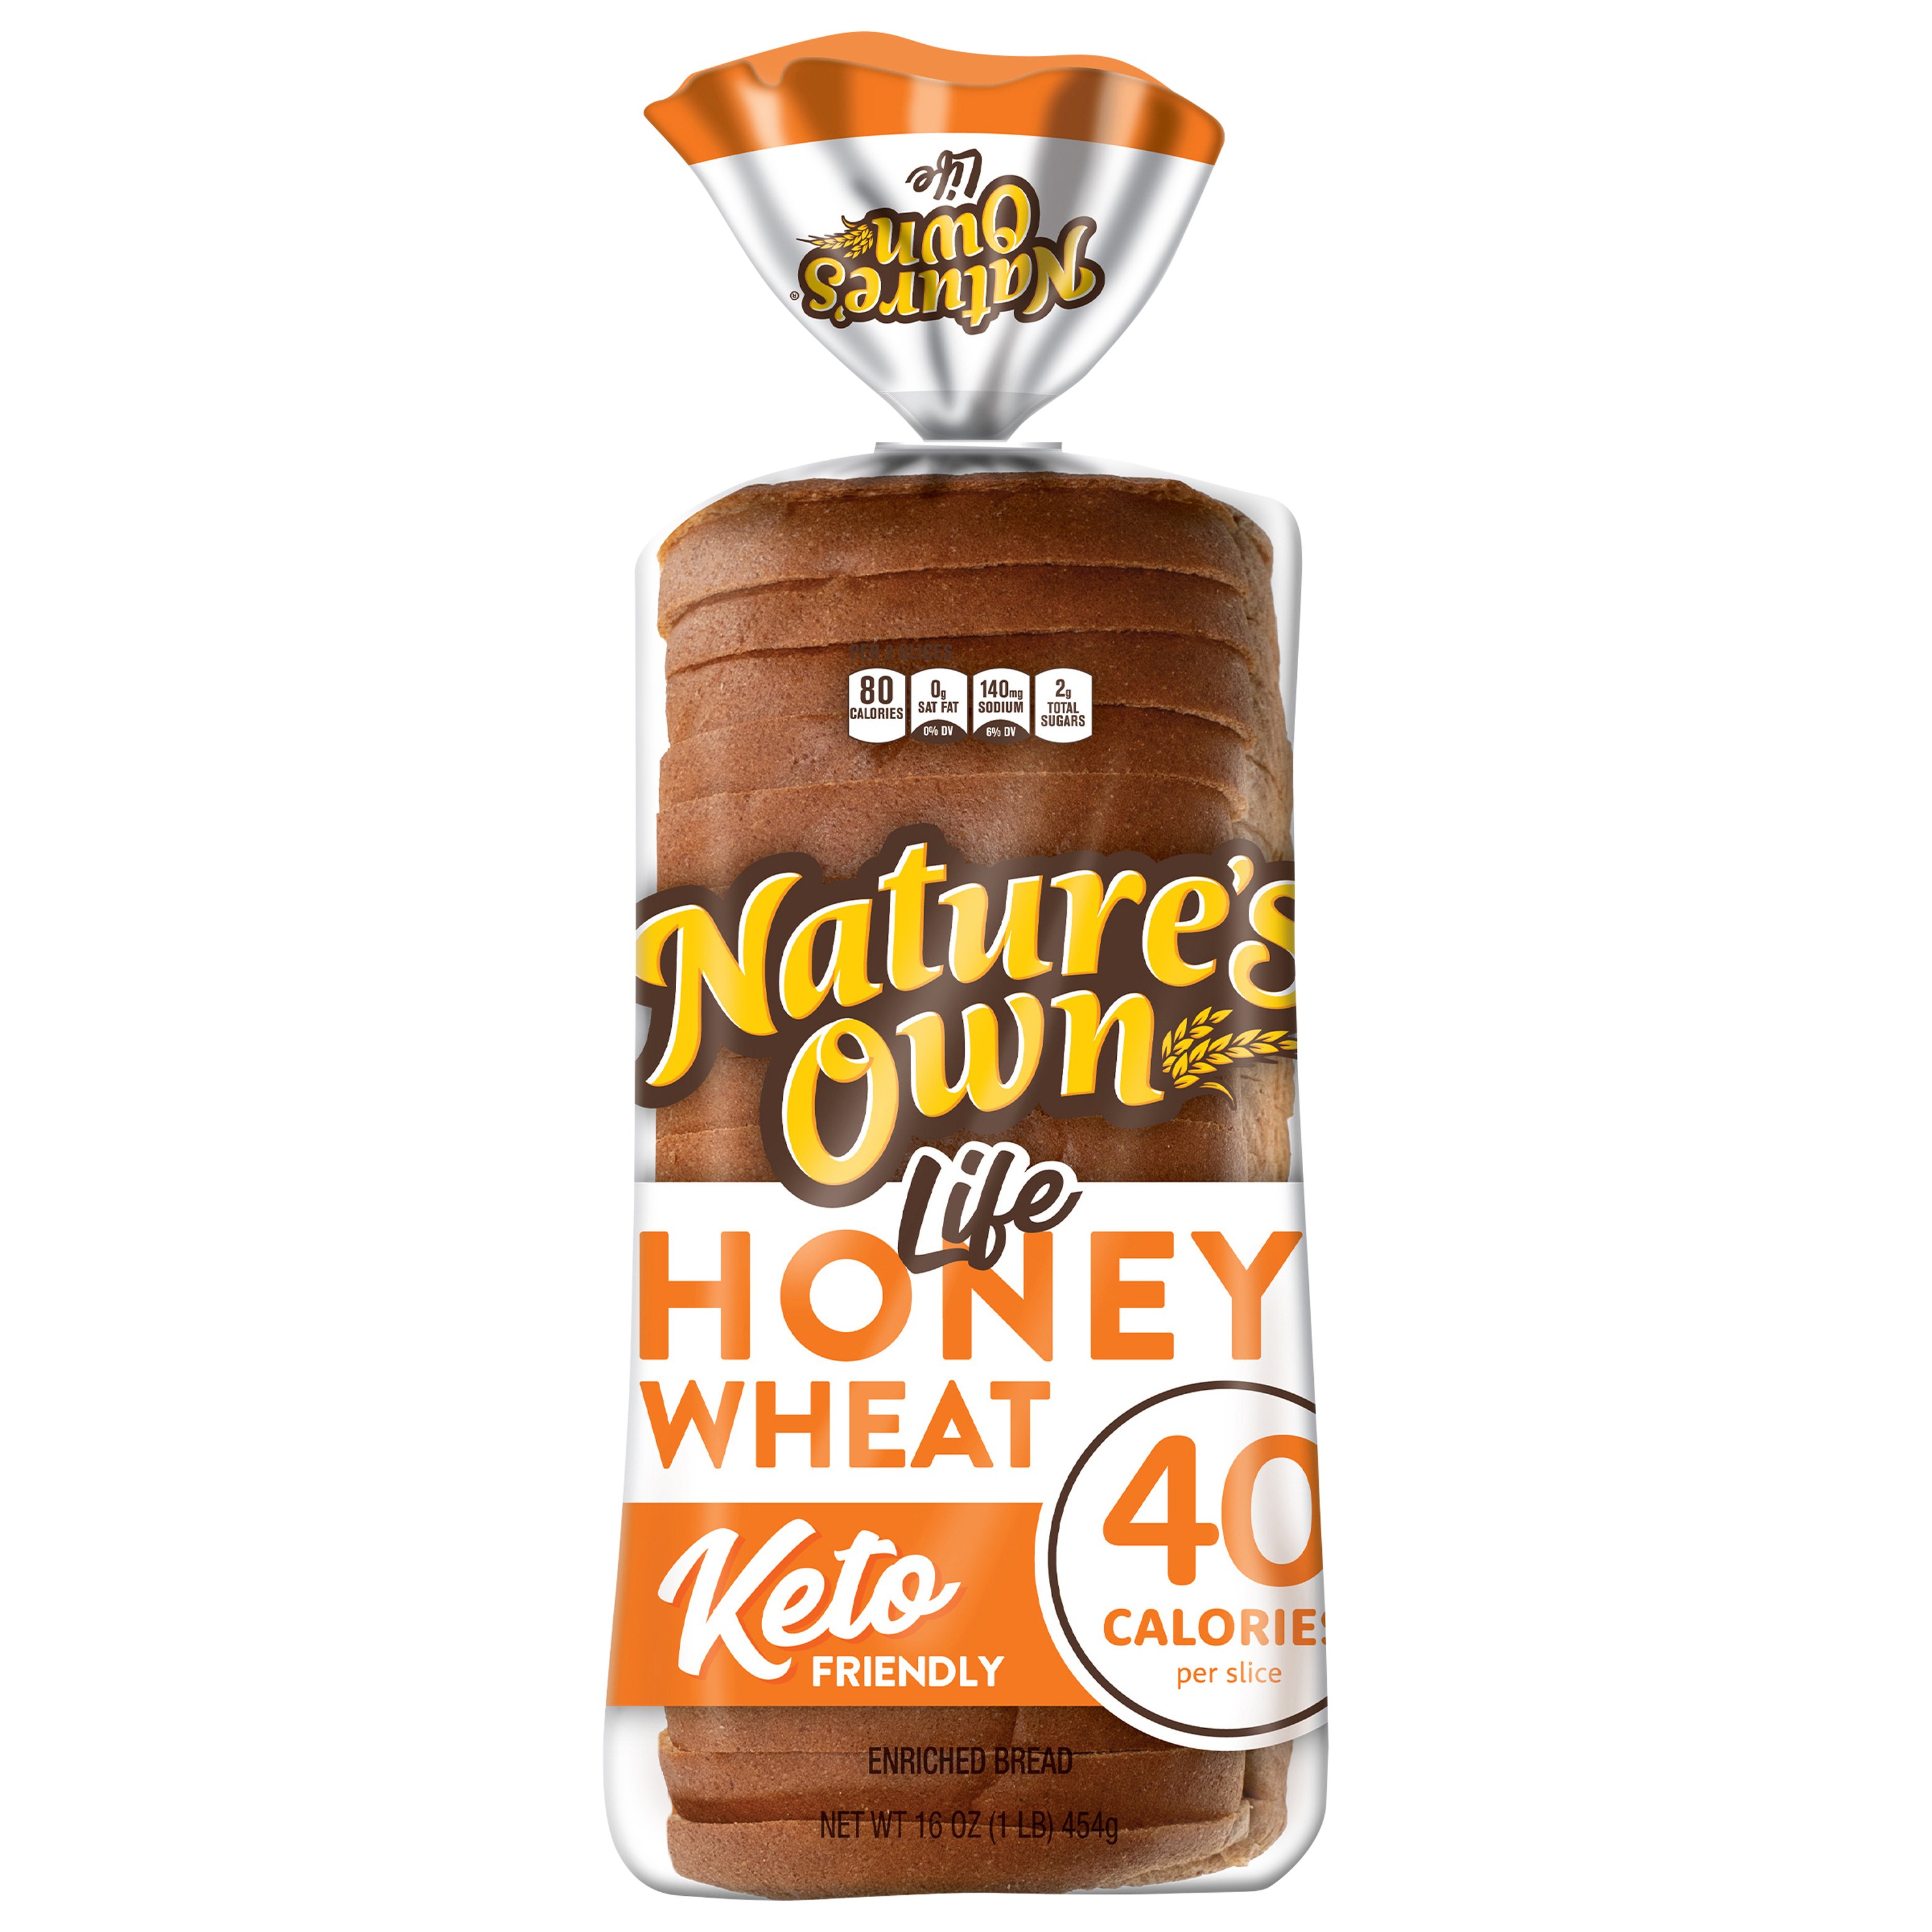 Healthy Life Honey Wheat Bread